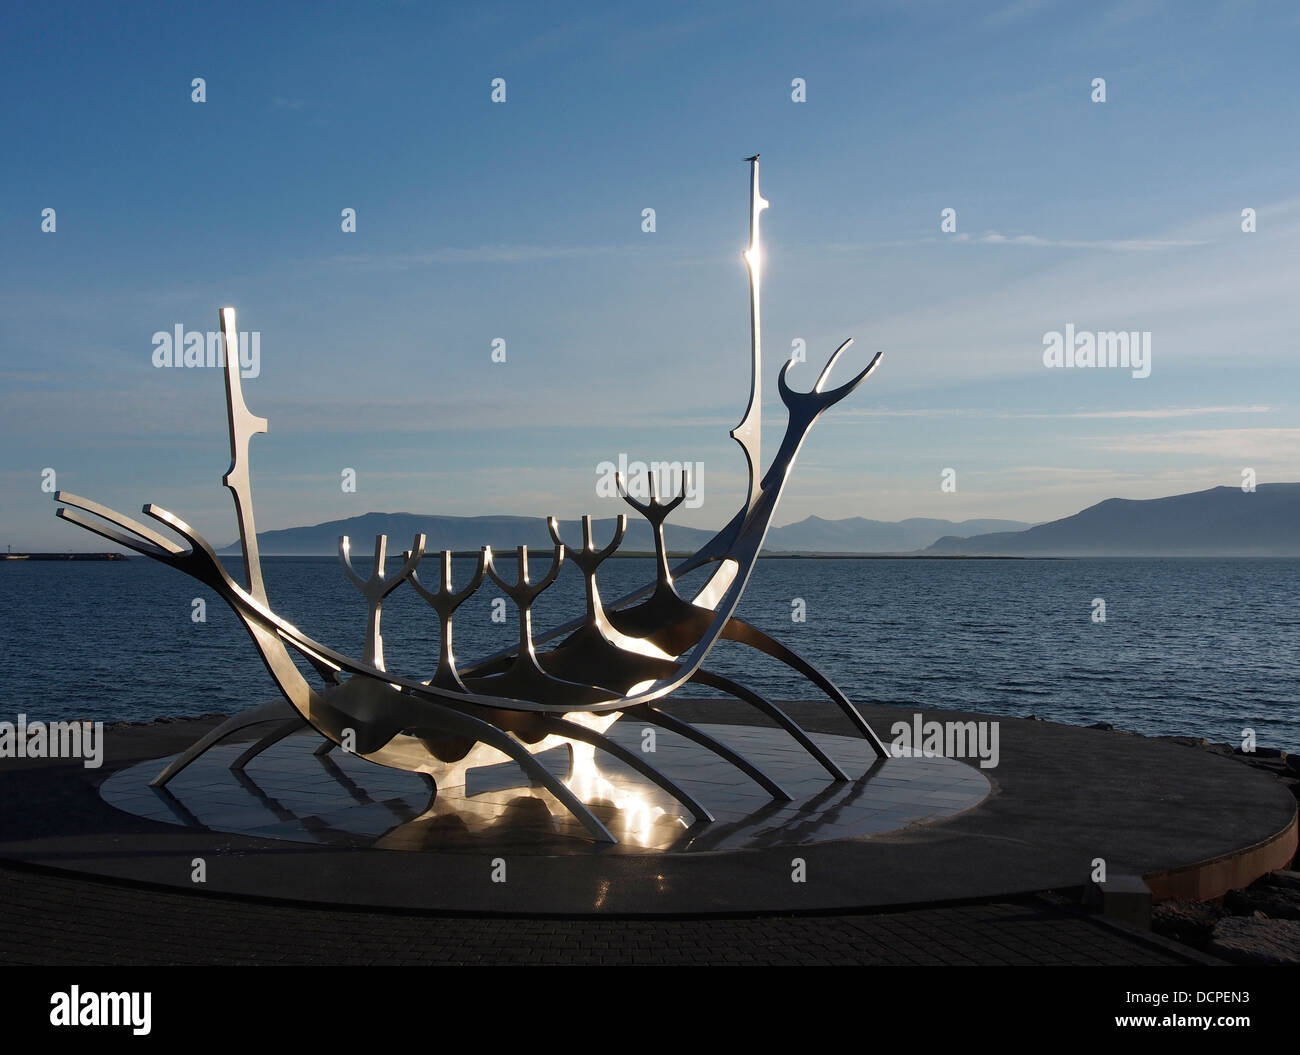 Bien voyager (Sólfar) bateau viking sculpture, Reykjavik, Islande Banque D'Images